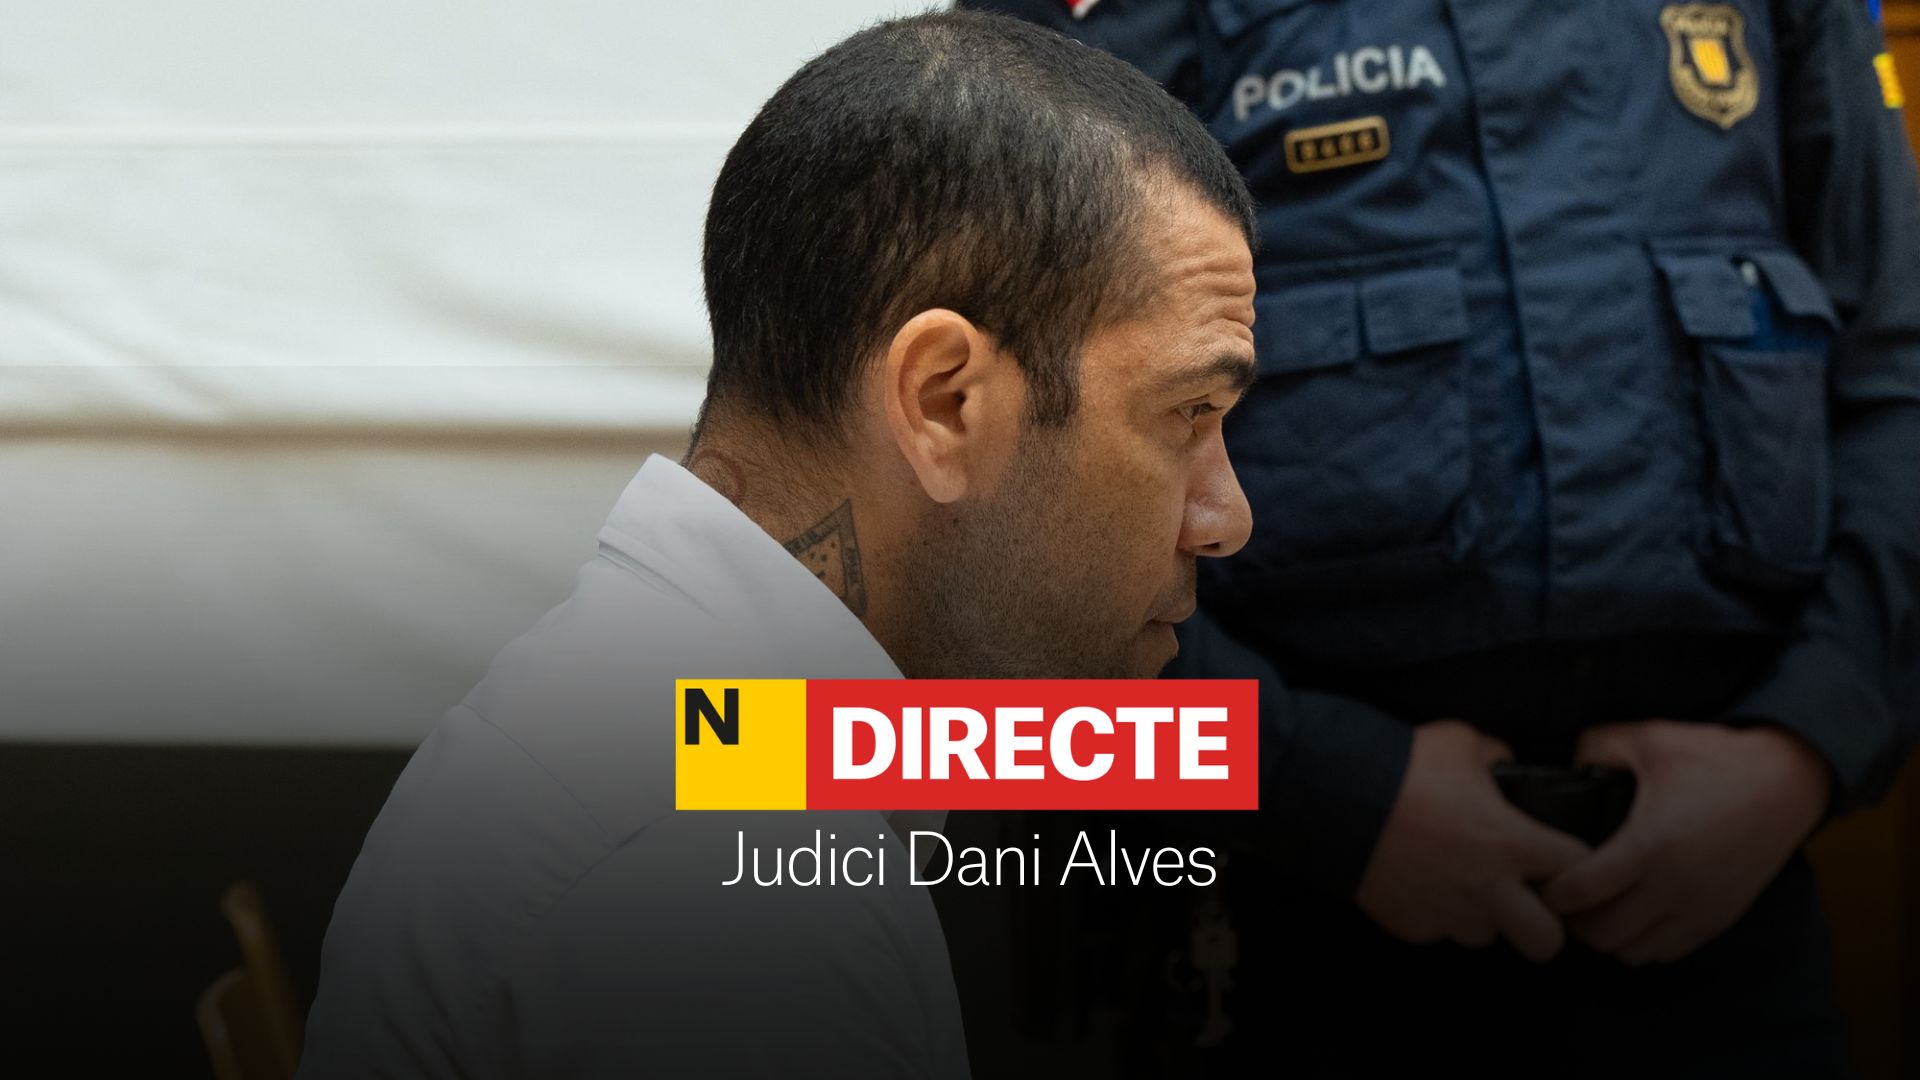 Judici a Dani Alves per presumpta agressió sexual, DIRECTE | Declaracions i última hora